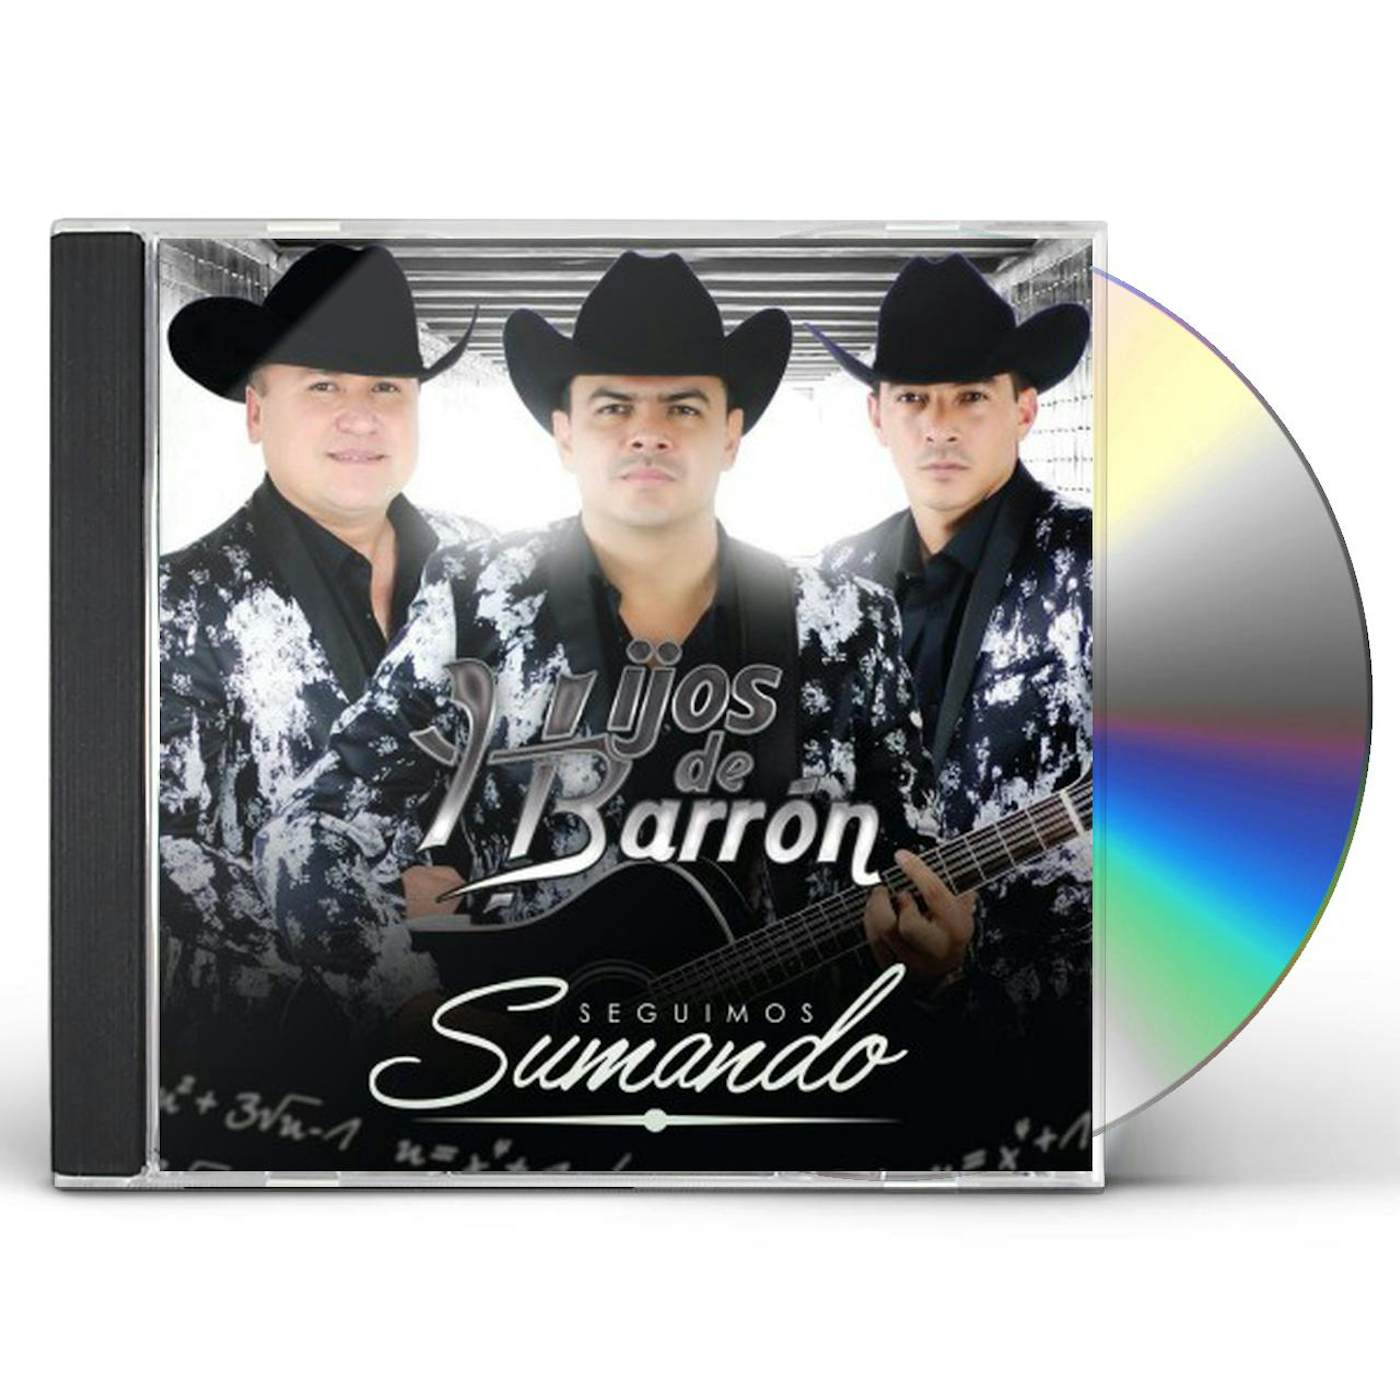 Hijos De Barron SEGUIMOS SUMANDO CD